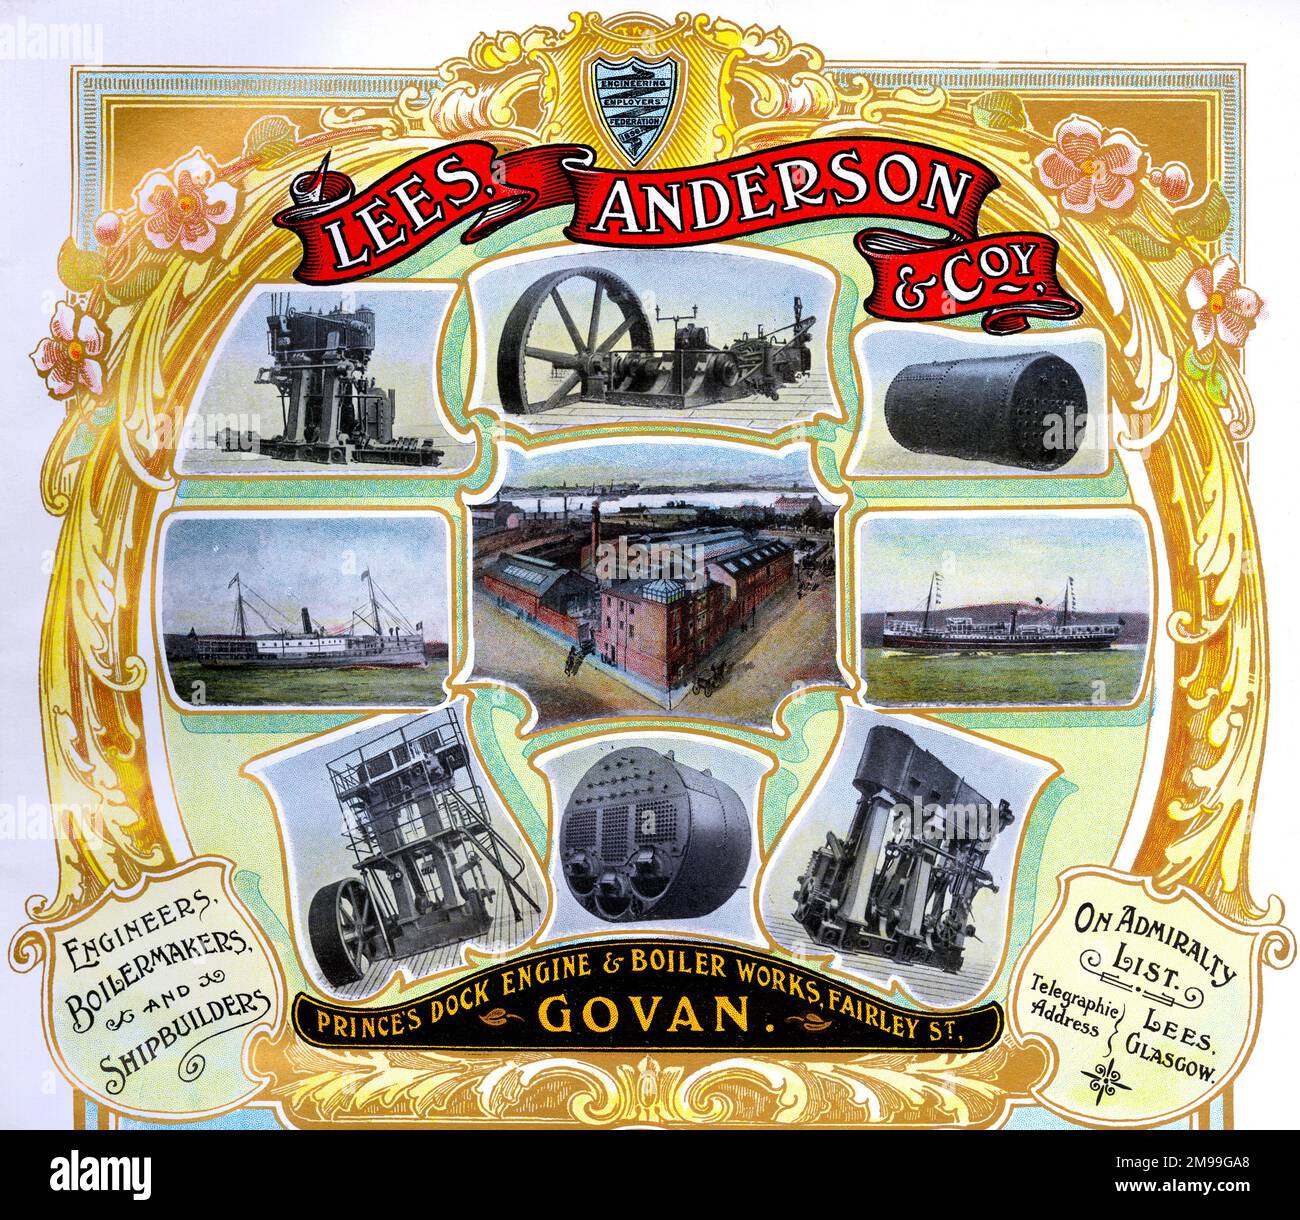 Pubblicità per Lees, Anderson & Co, ingegneri, boilermakers e costruttori di navi, Fairley Street, Govan, Scozia. Foto Stock